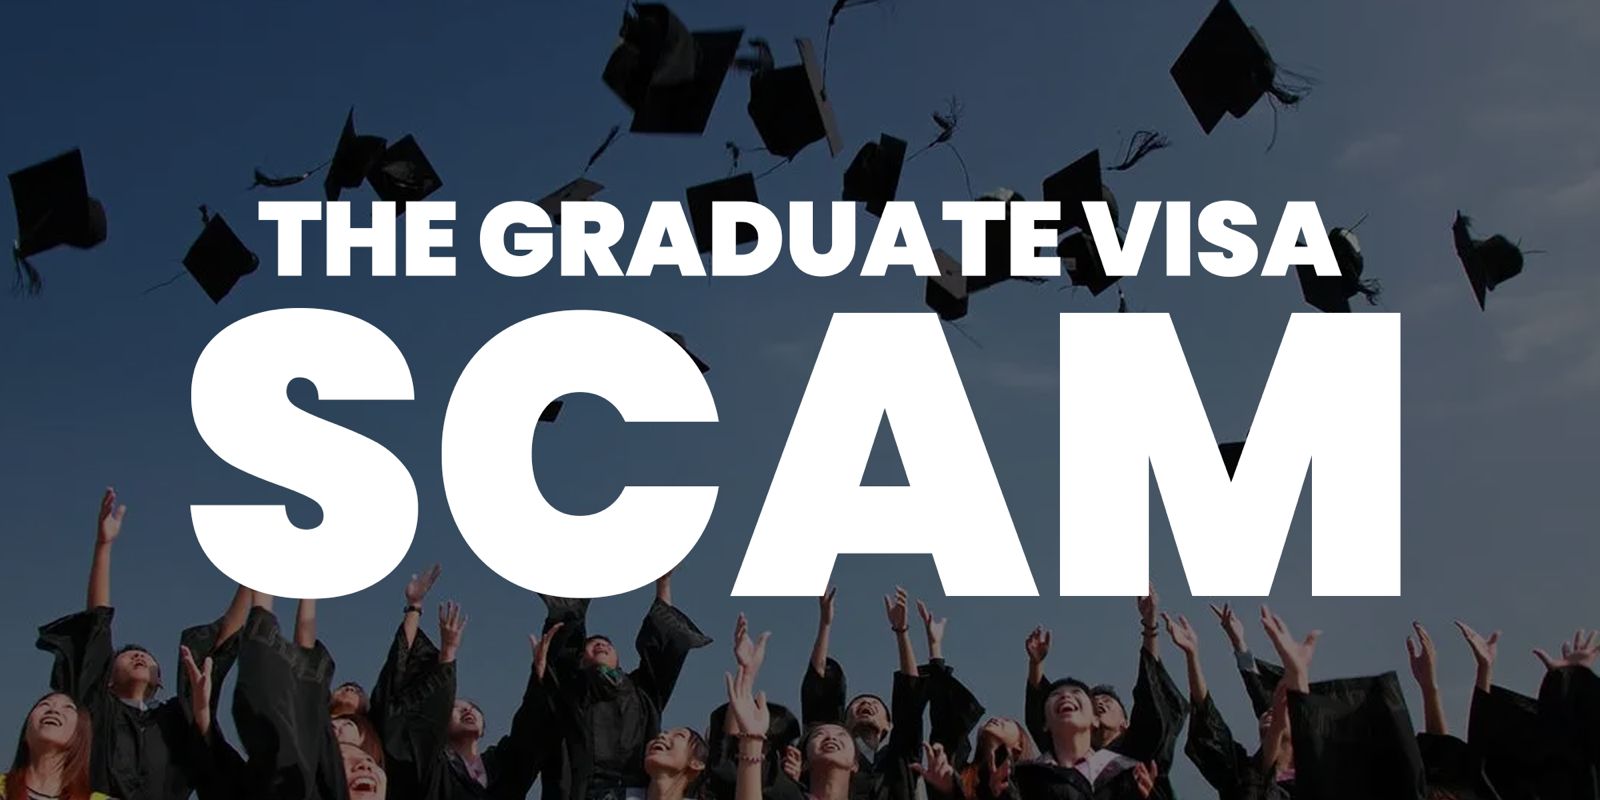 the-graduate-visa-scam